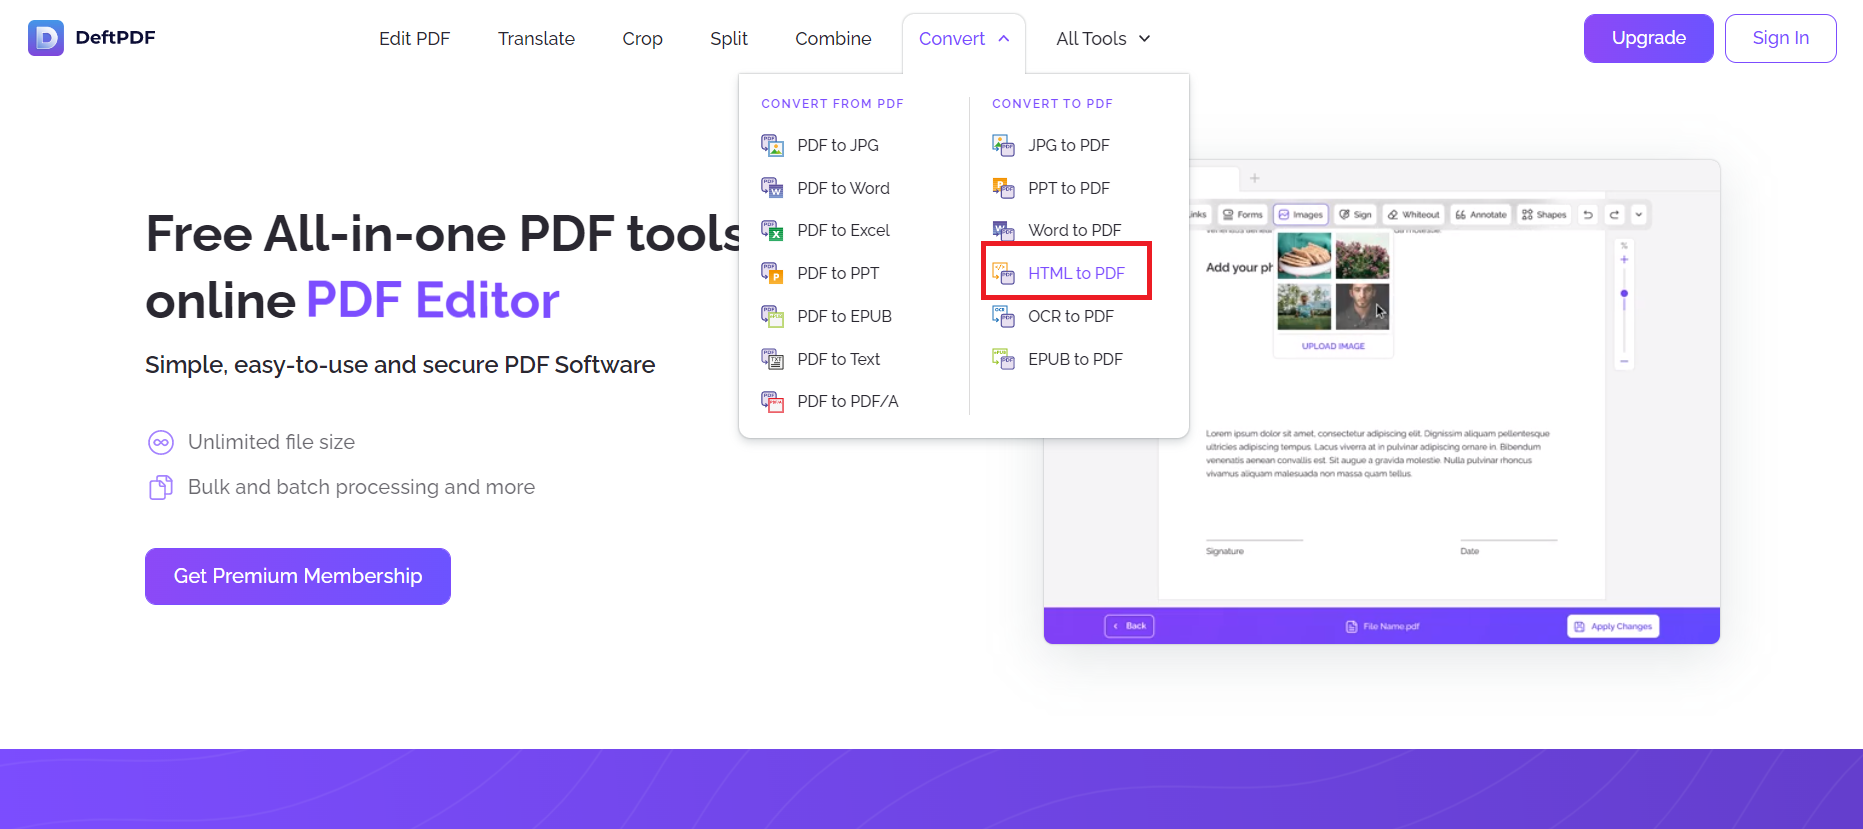 DeftPDF HTML tool